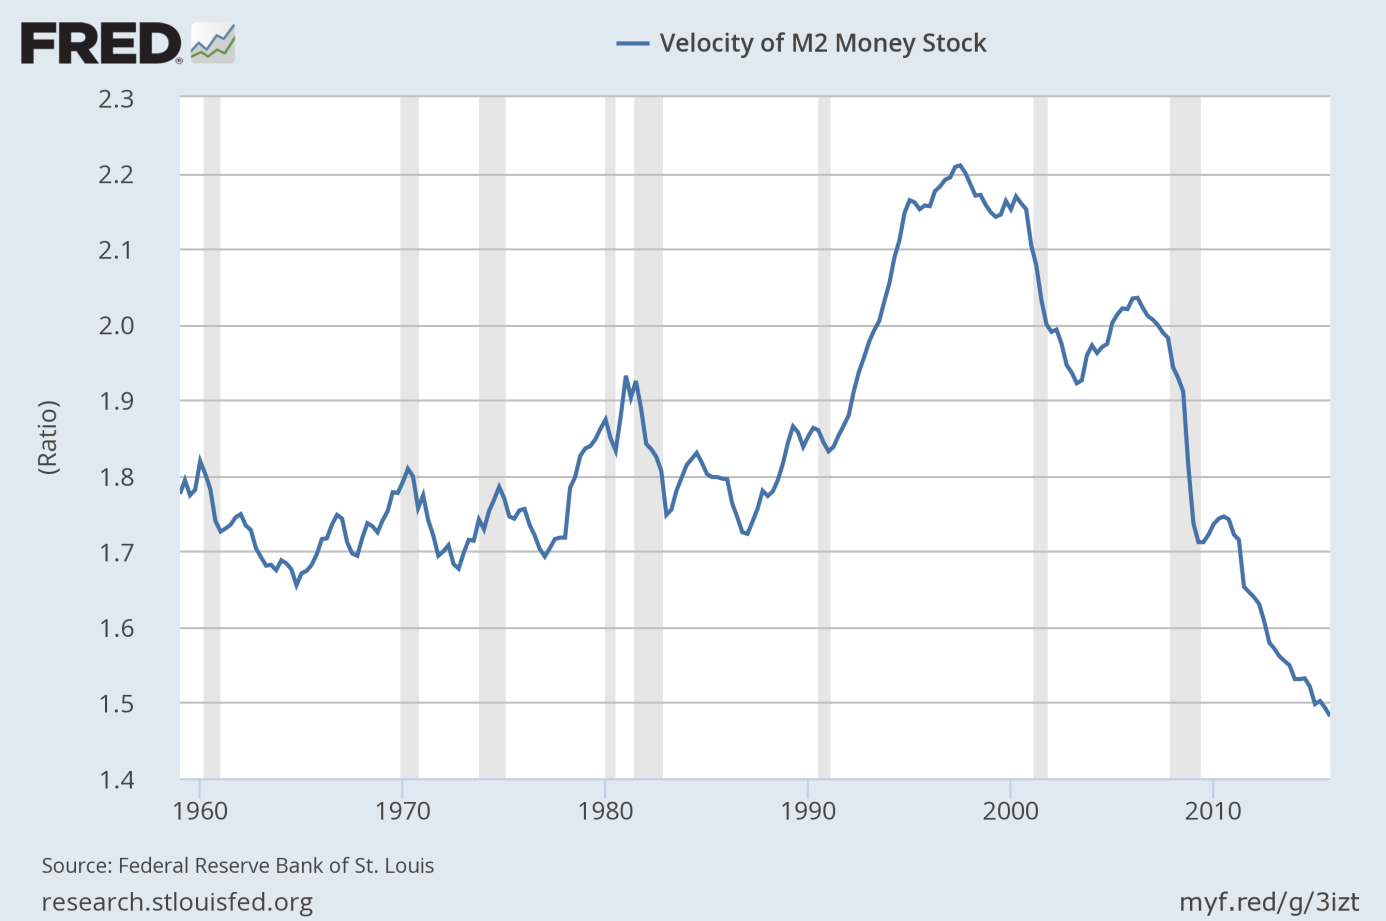 The velocity of M2 money